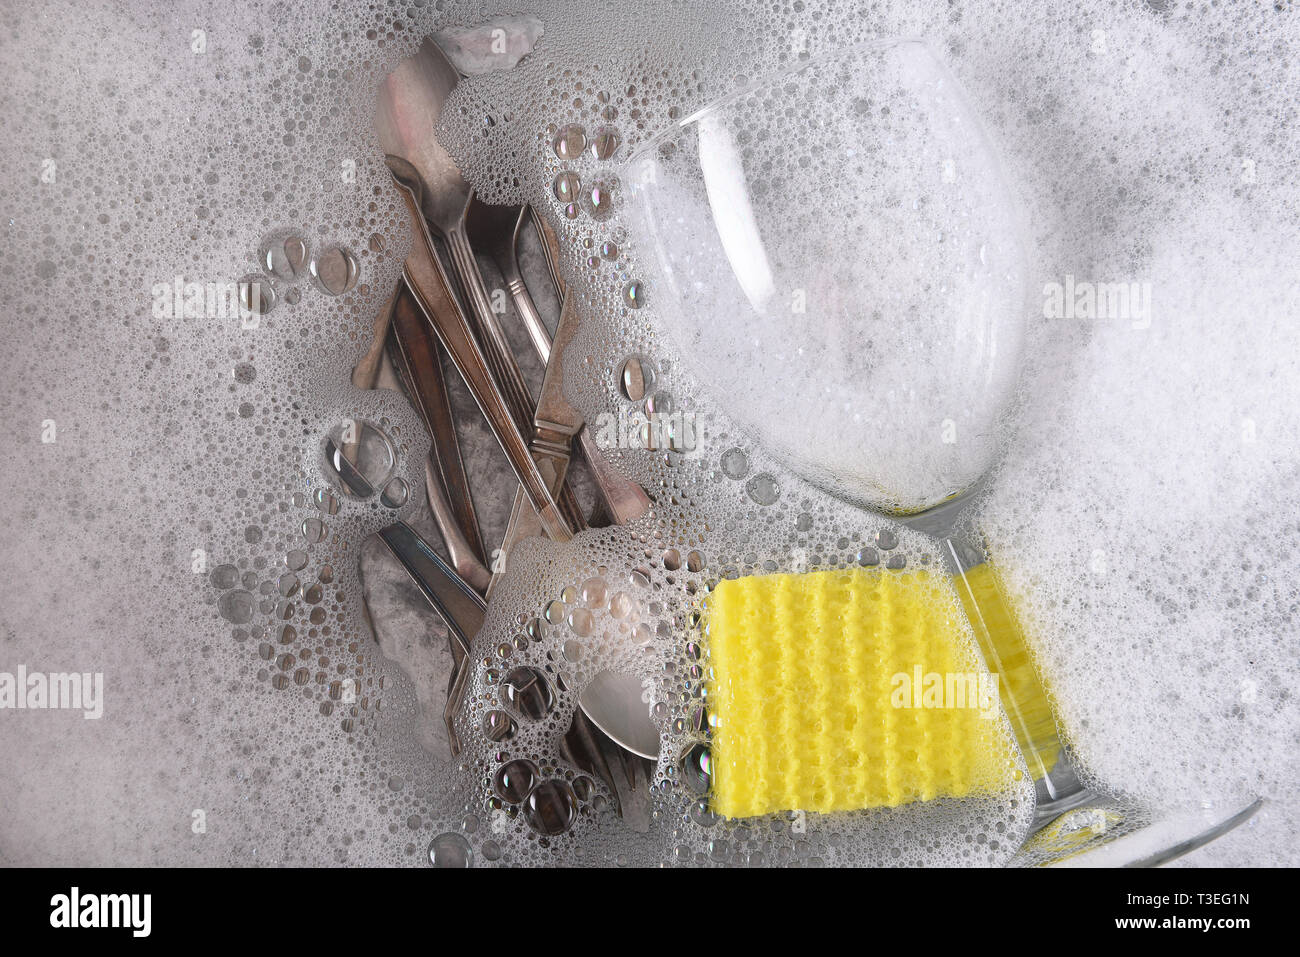 Passage tiré d'un égouttoir à vaisselle rempli d'eau savonneuse, avec des couverts, un verre de vin et d'une éponge. Banque D'Images